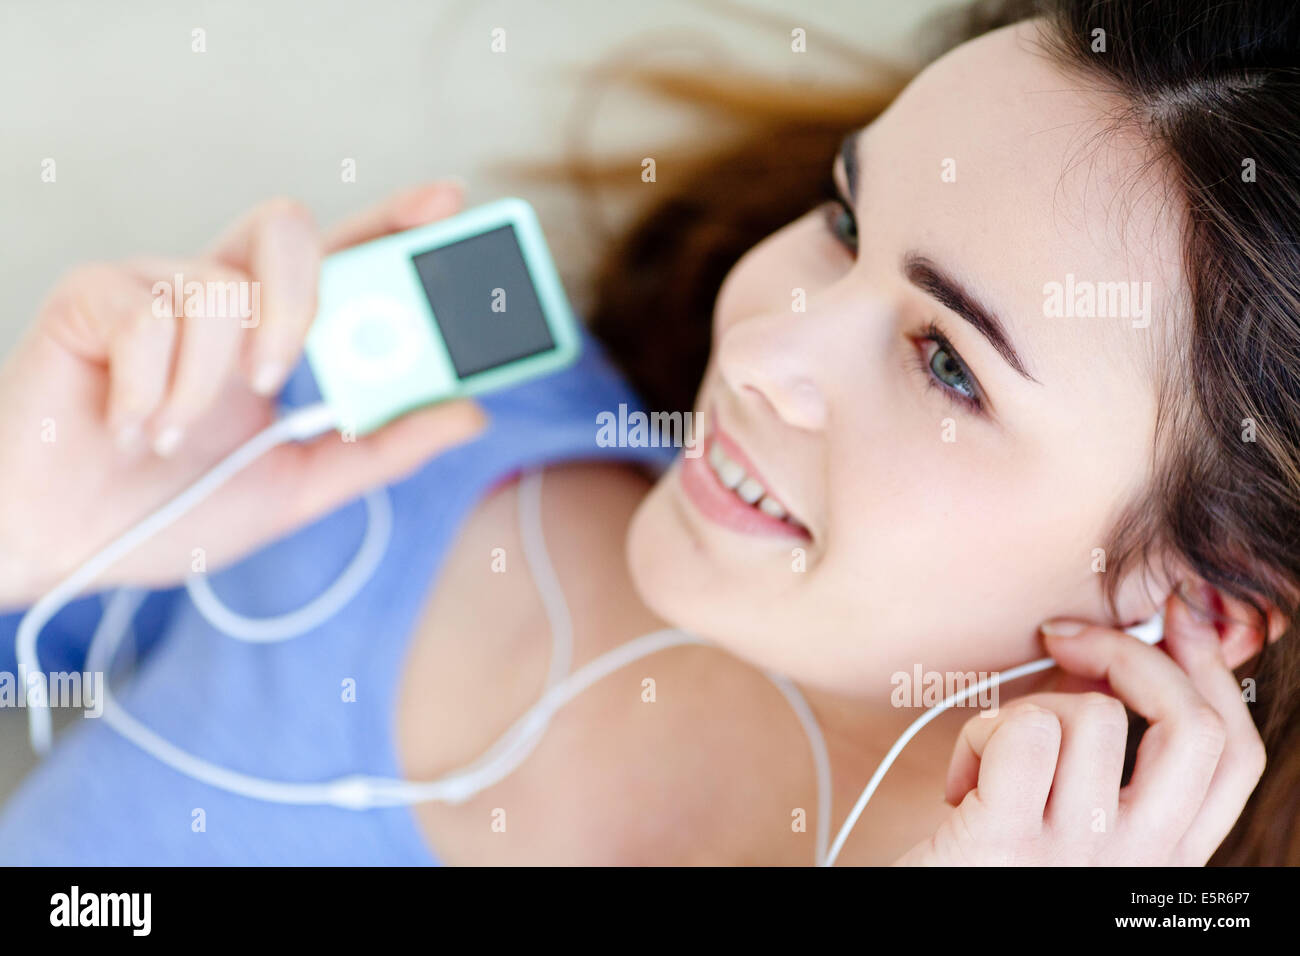 Frau Musik auf einen Ipod MP3-Player anhören. Stockfoto